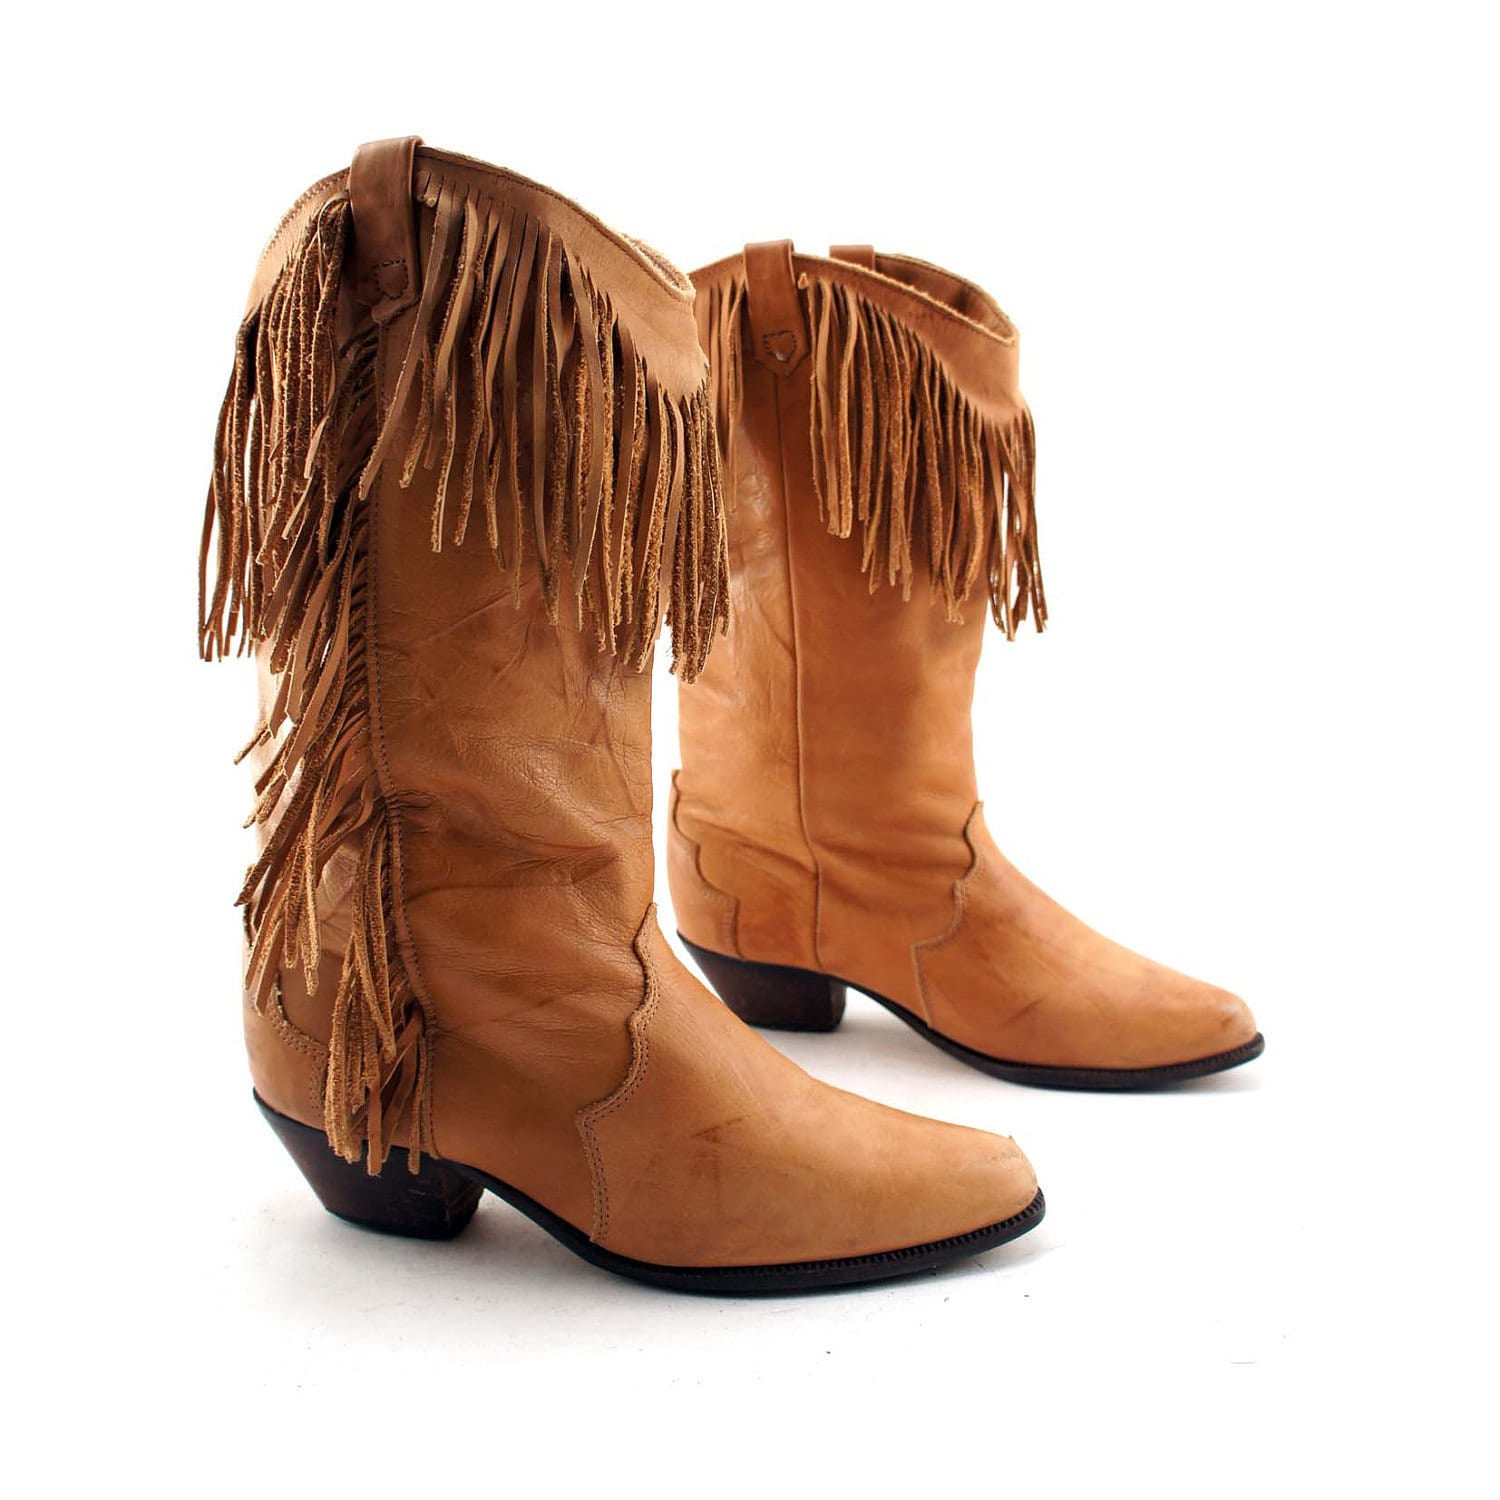 BLACK FRIDAY / Boho Fringe Cowboy Boots Camel Brown Leather